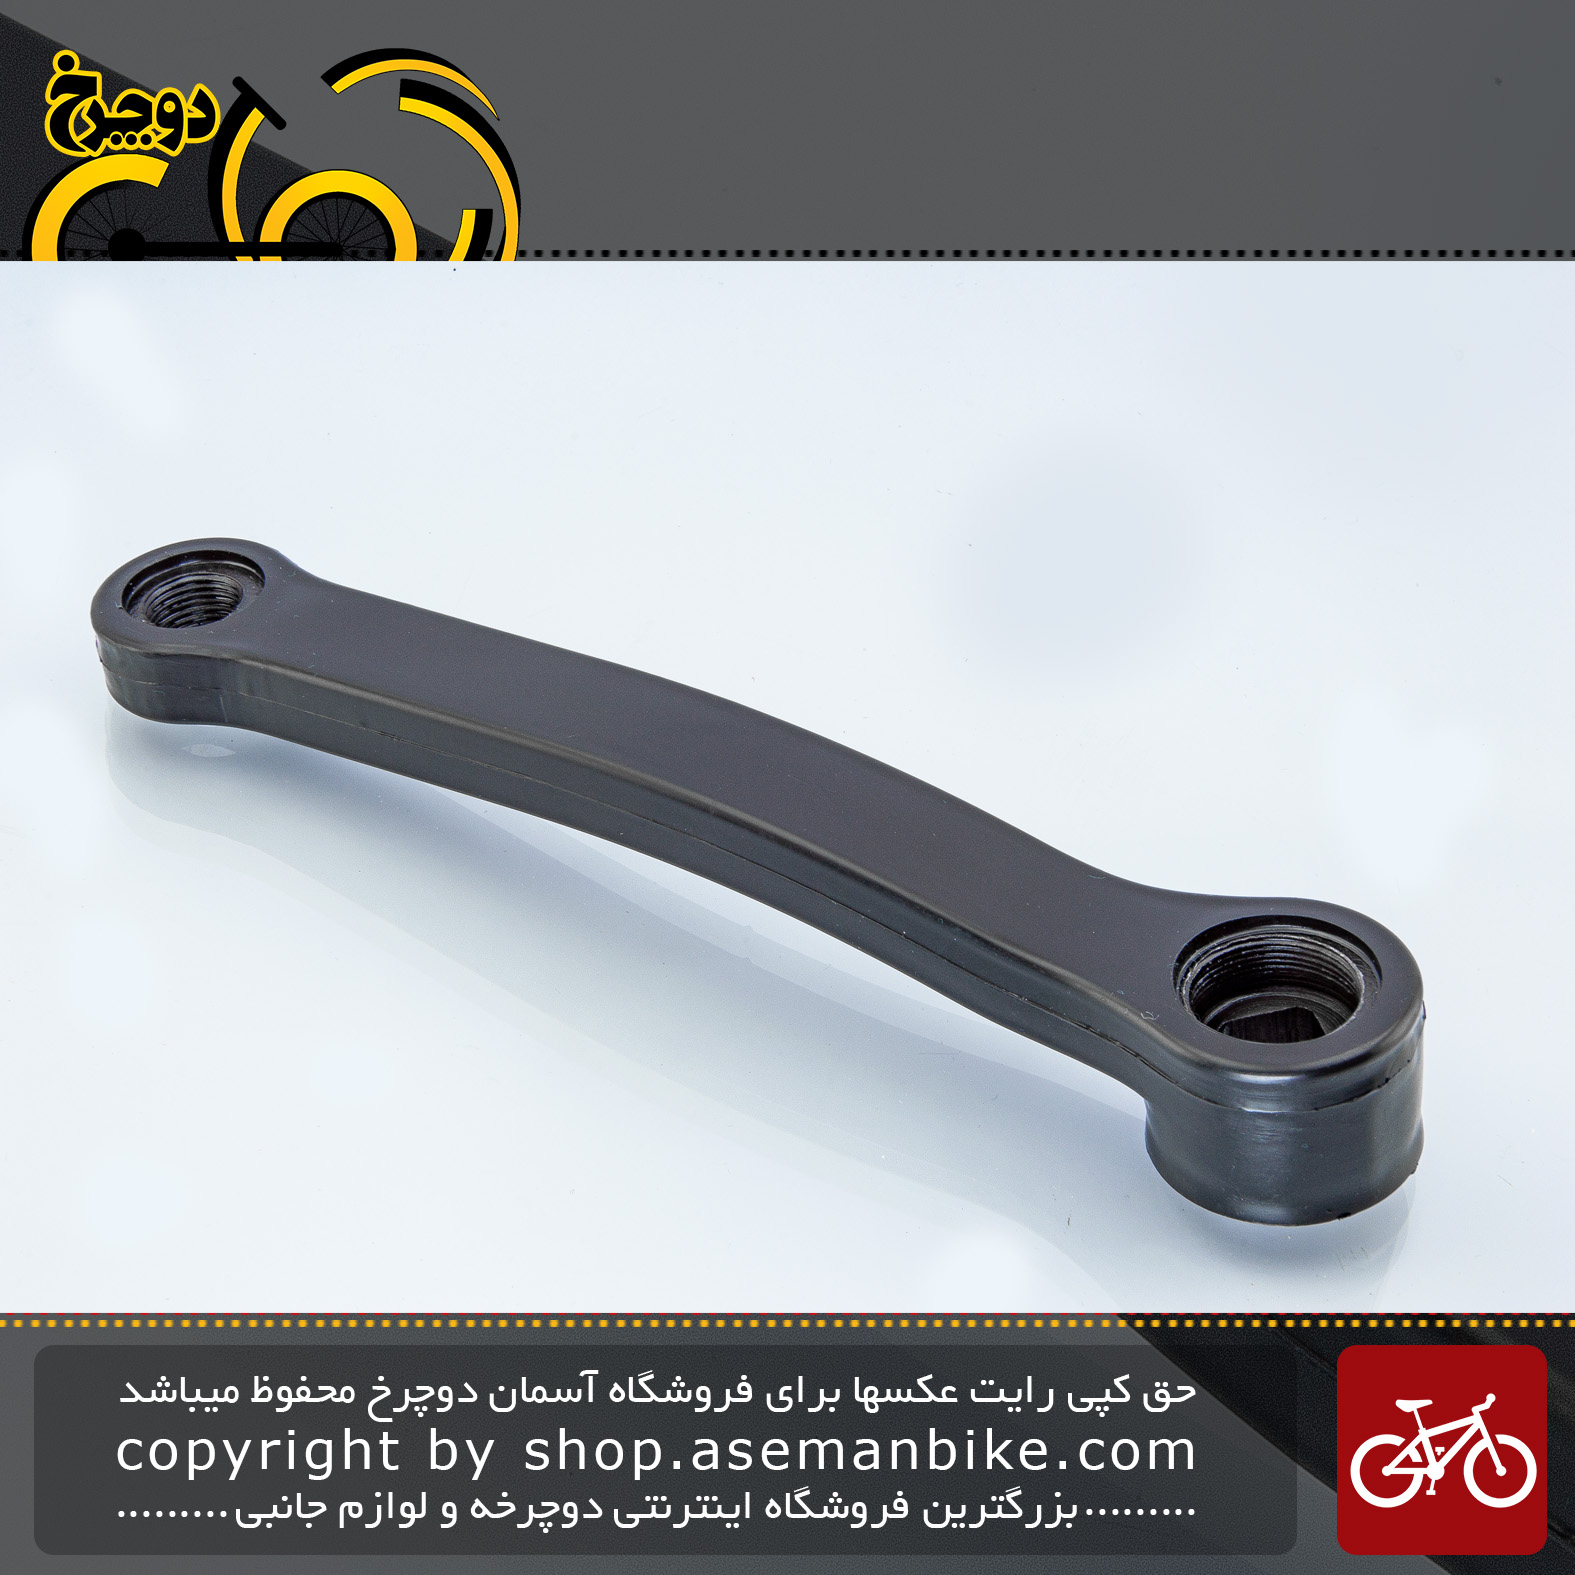 کرنک قامه استیل دوچرخه سمت چپ چهار گوش رنگ مشکی Bicycle Left Crank Arm Standard Pedal Hole Steel Black 170 MM